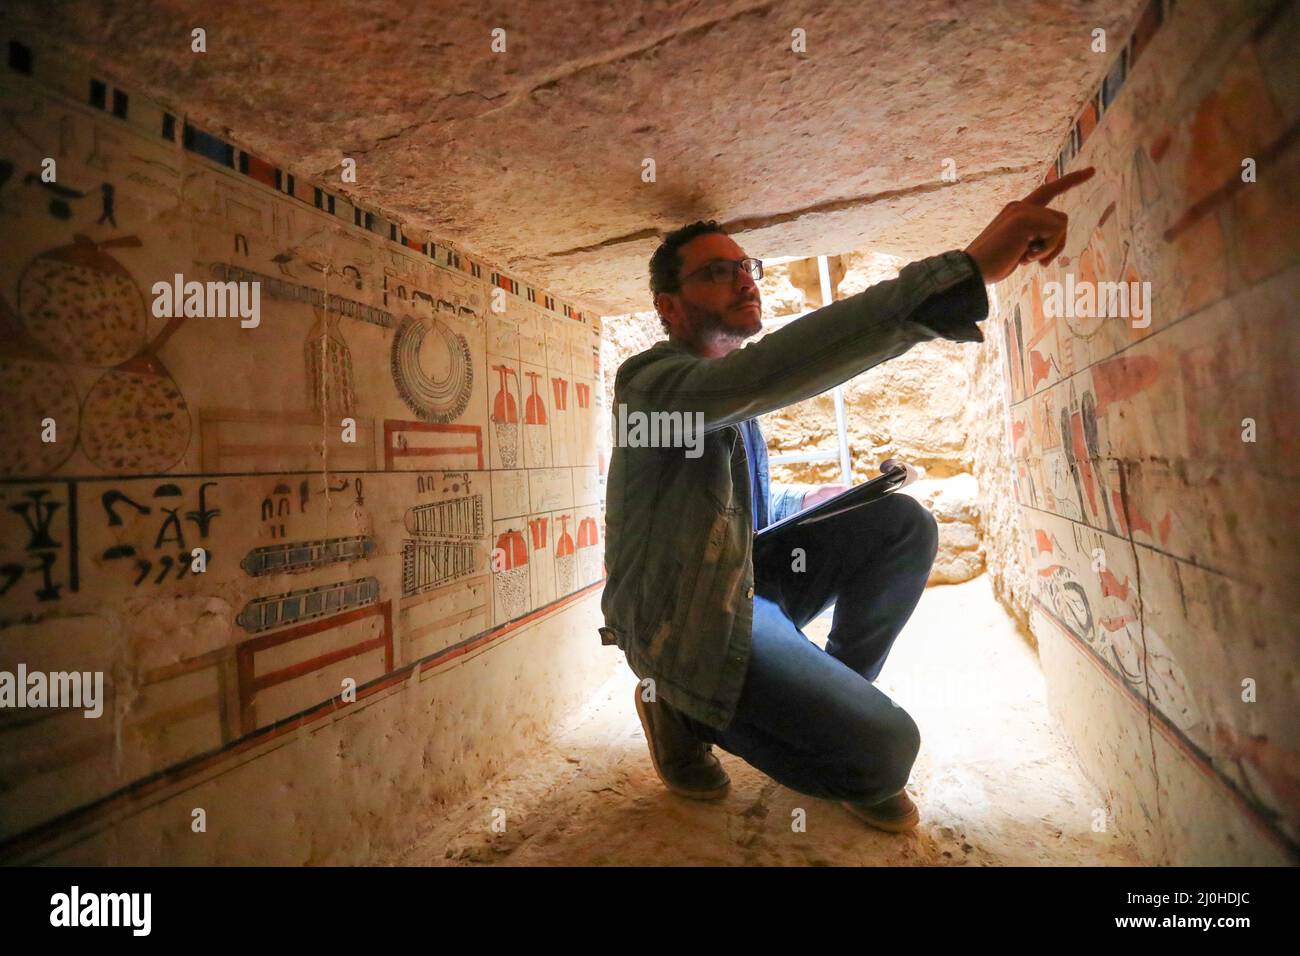 (220319) -- LE CAIRE, le 19 mars 2022 (Xinhua) -- un archéologue présente la peinture murale dans une ancienne tombe découverte sur les sites archéologiques de Saqqara, au sud-ouest du Caire, en Égypte, le 19 mars 2022. Le ministère égyptien du Tourisme et des Antiquités a annoncé jeudi la découverte de cinq tombes anciennes de 4 000 ans dans les sites archéologiques de Saqqara, au sud-ouest du Caire. Les tombes contiennent des découvertes et des objets datant de la fin de l'ancien Royaume s'étendant de 2686 BC à 2181 BC et le début de la première période intermédiaire s'étendant de 2181 BC à 2055 BC. ALLER AVEC 'Egypt dis Banque D'Images